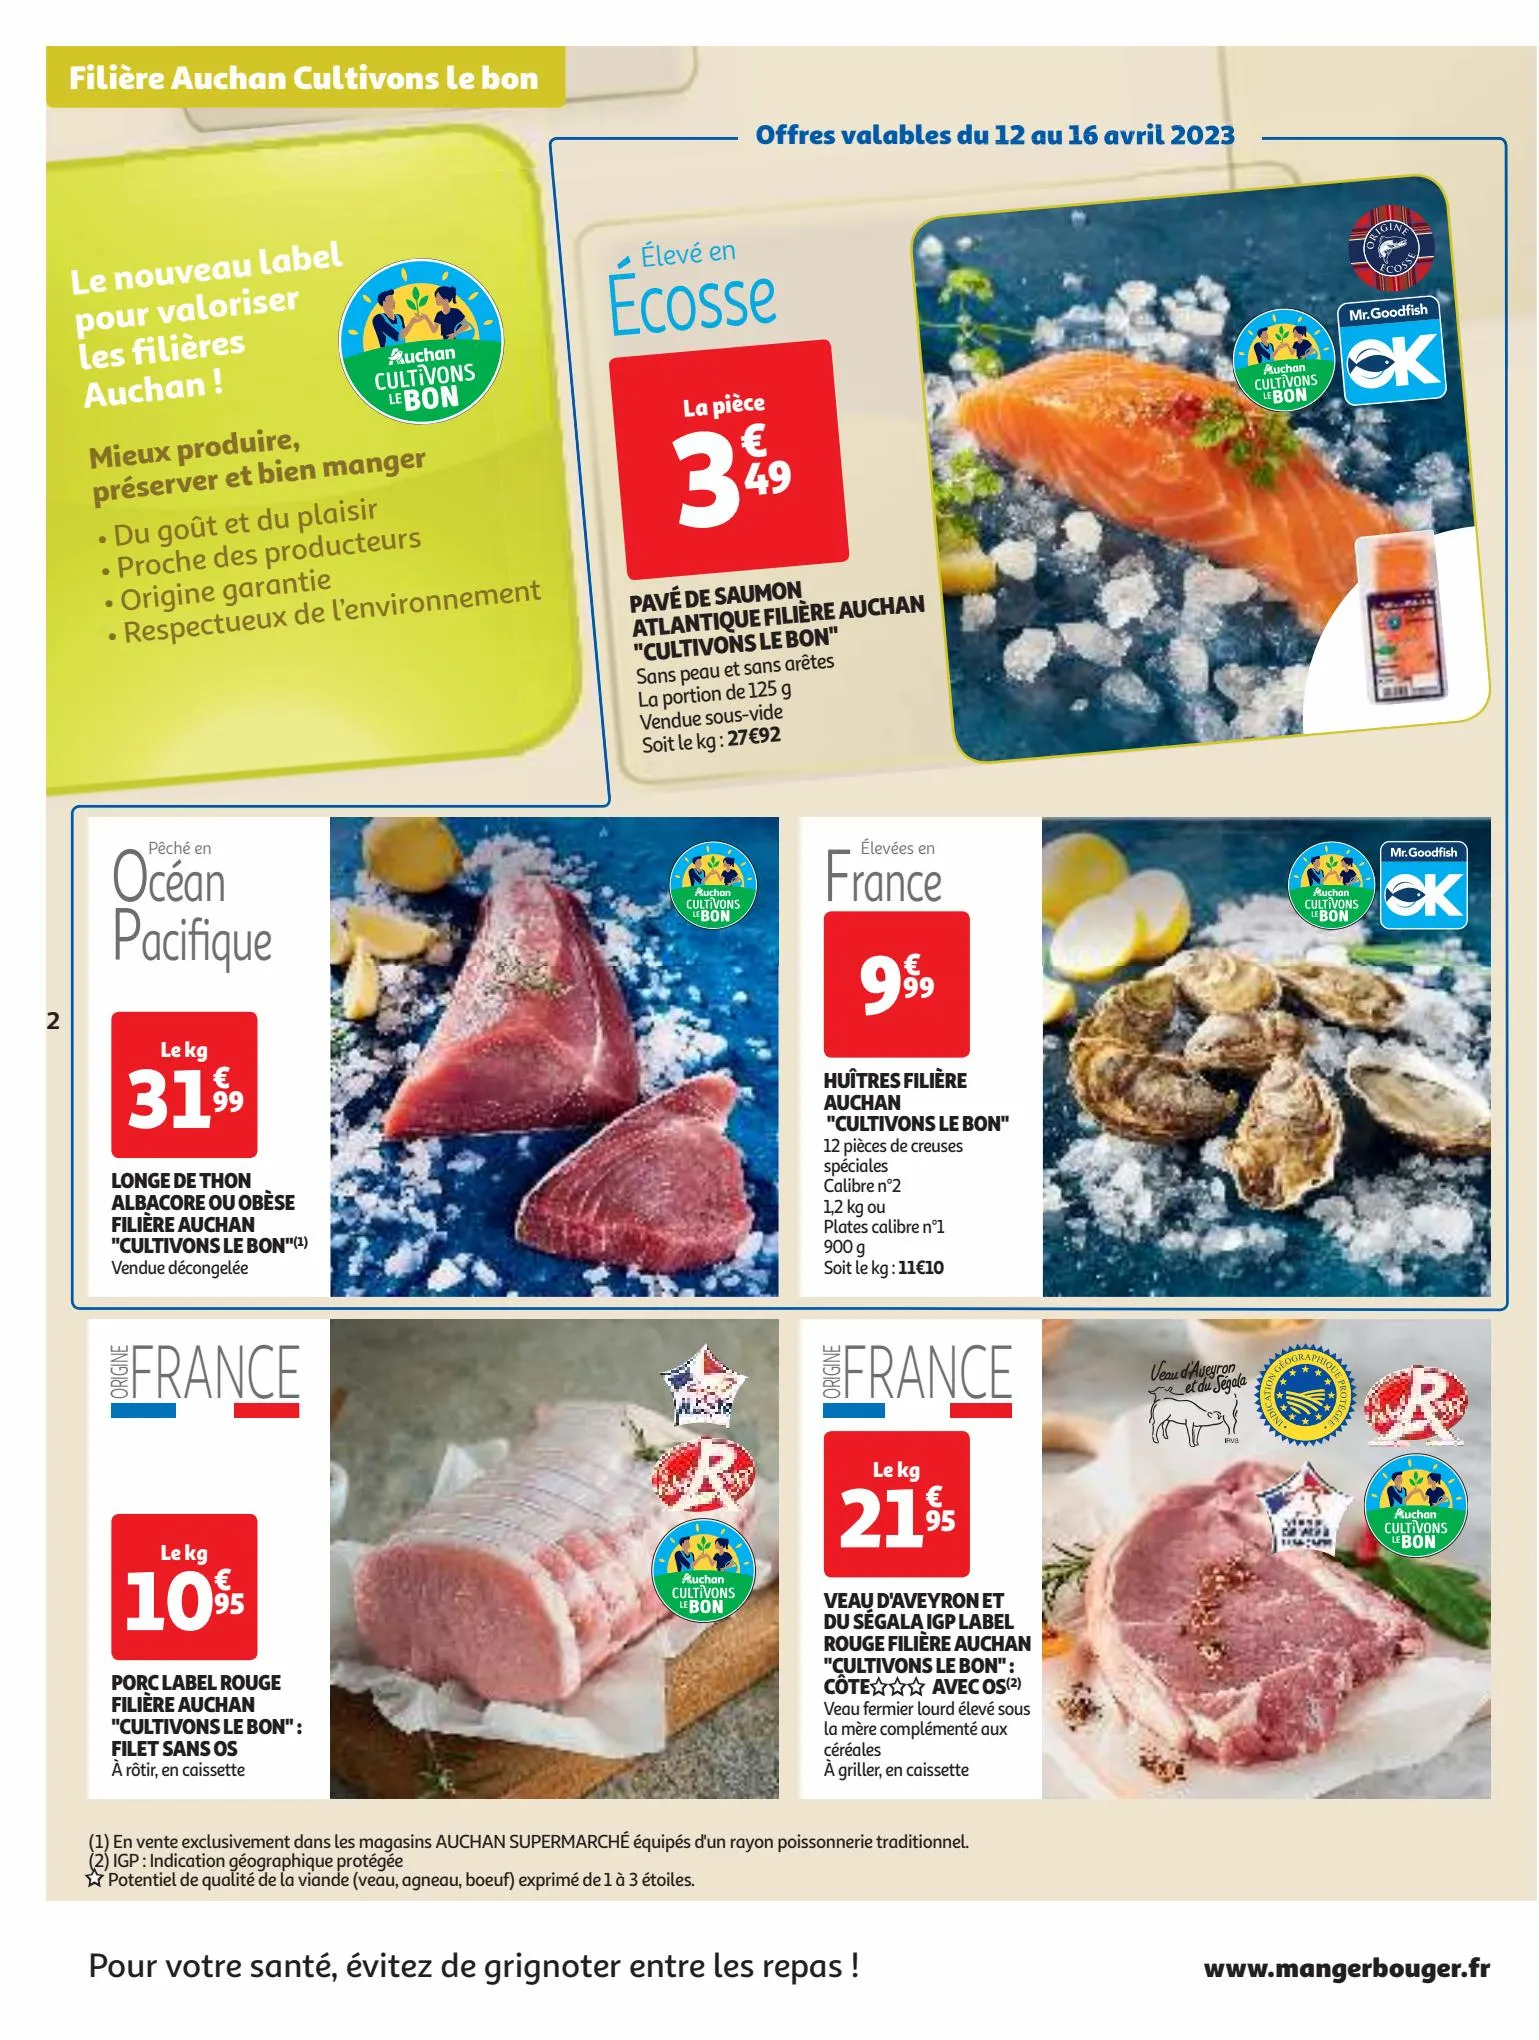 Catalogue Nos marques Auchan : le bon choix sans concession, page 00002